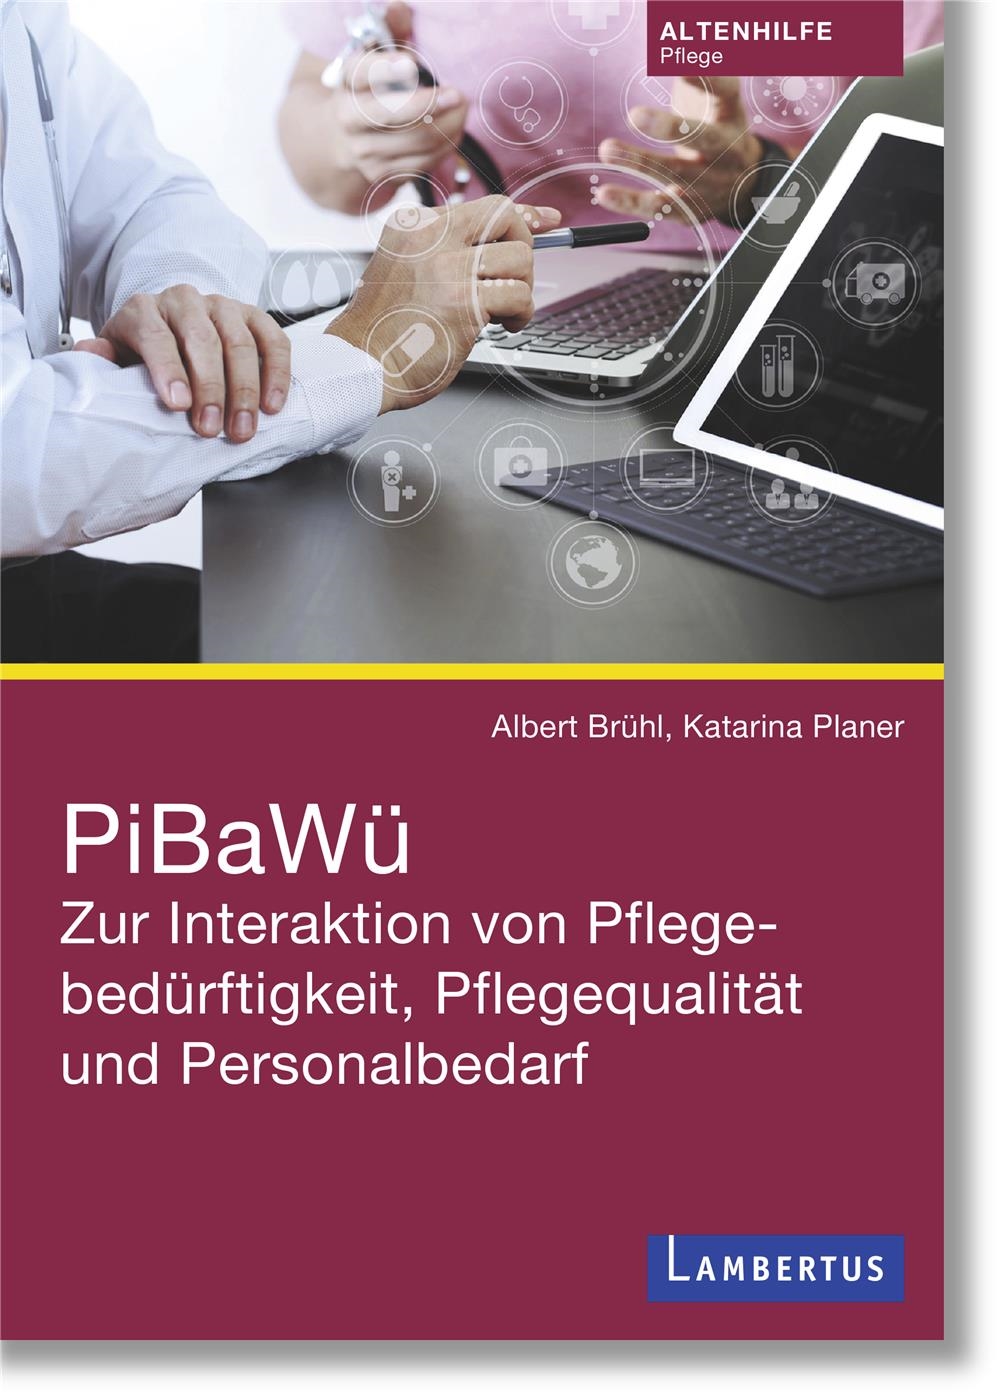 Planer/Brühl_PiBaWü